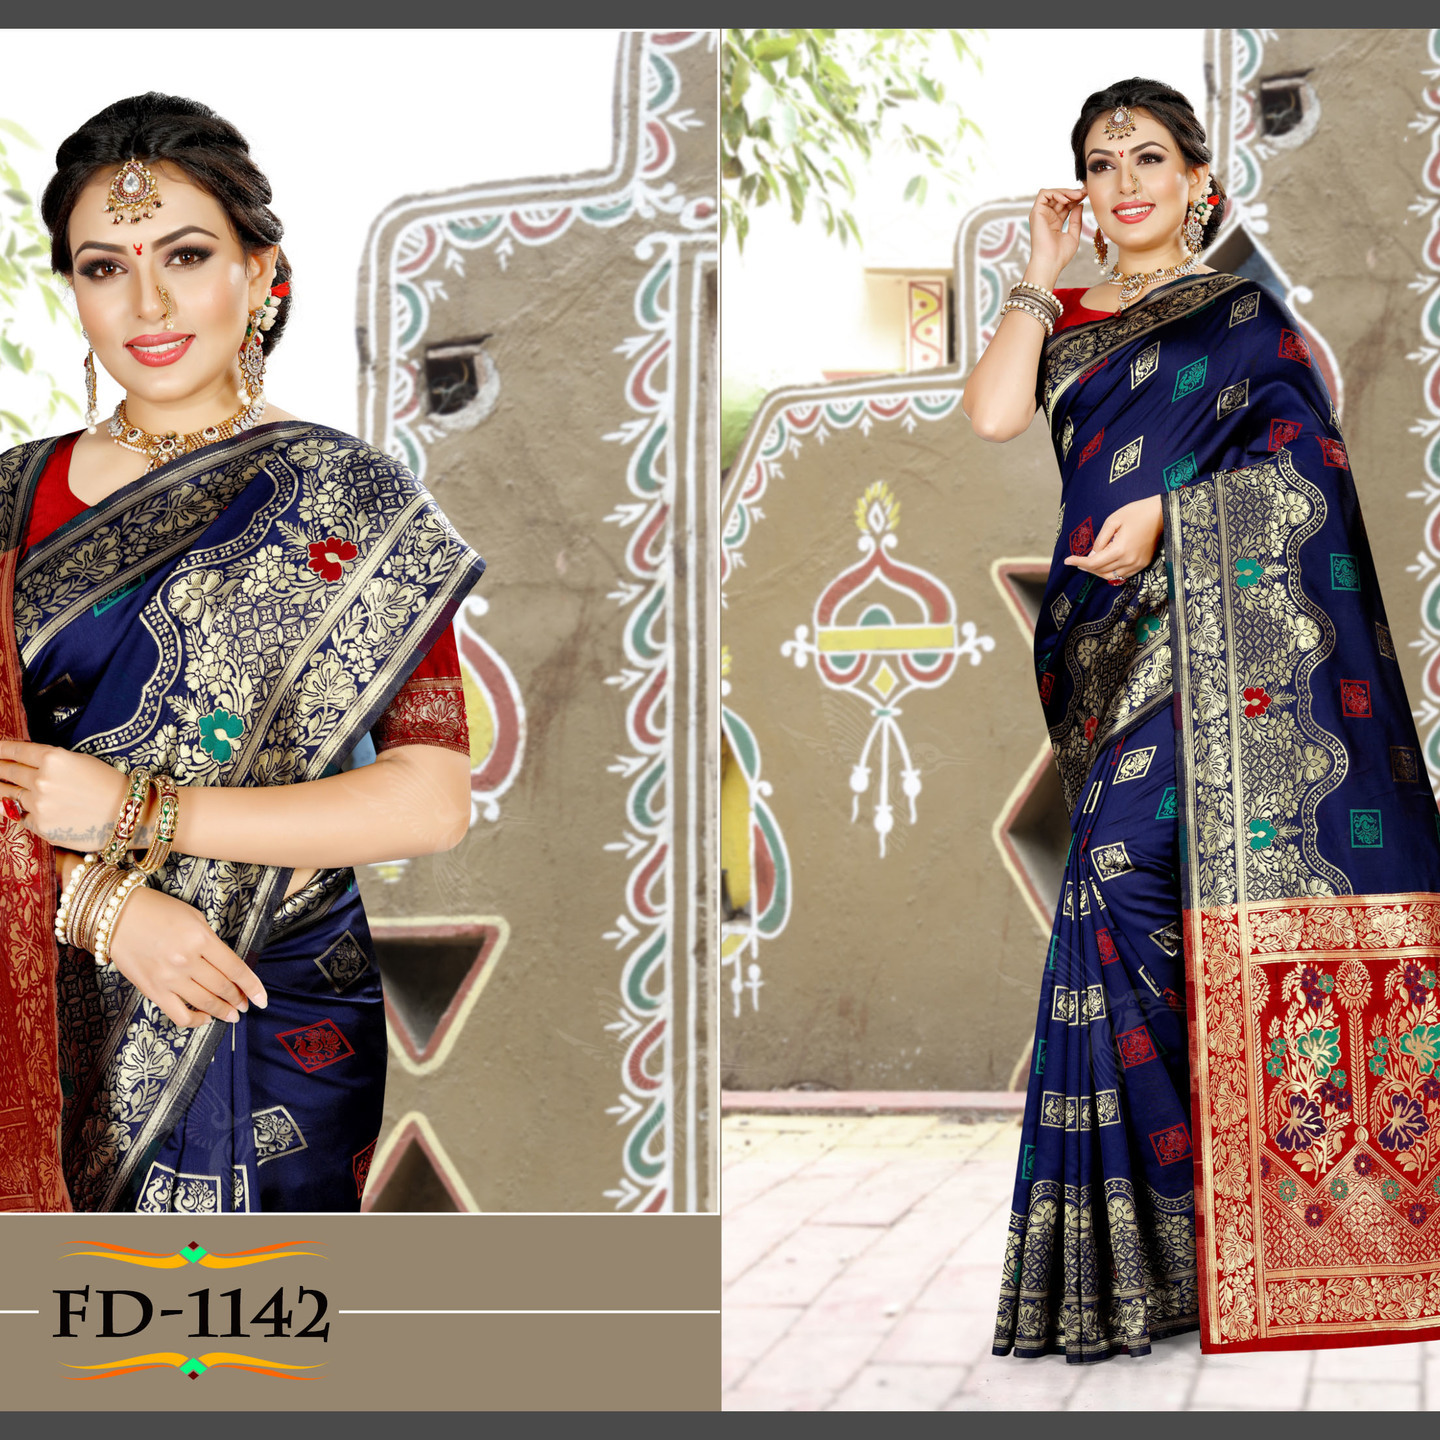 Robe Riche Saree Fabric: Banarasi Soft Silk with Reach Pallu, Blouse Fabric: Banarasi soft Silk,Saree Size: 5.5 Meter,Blouse Size: 0.8 MeterBlouse Size 0.8 Meter